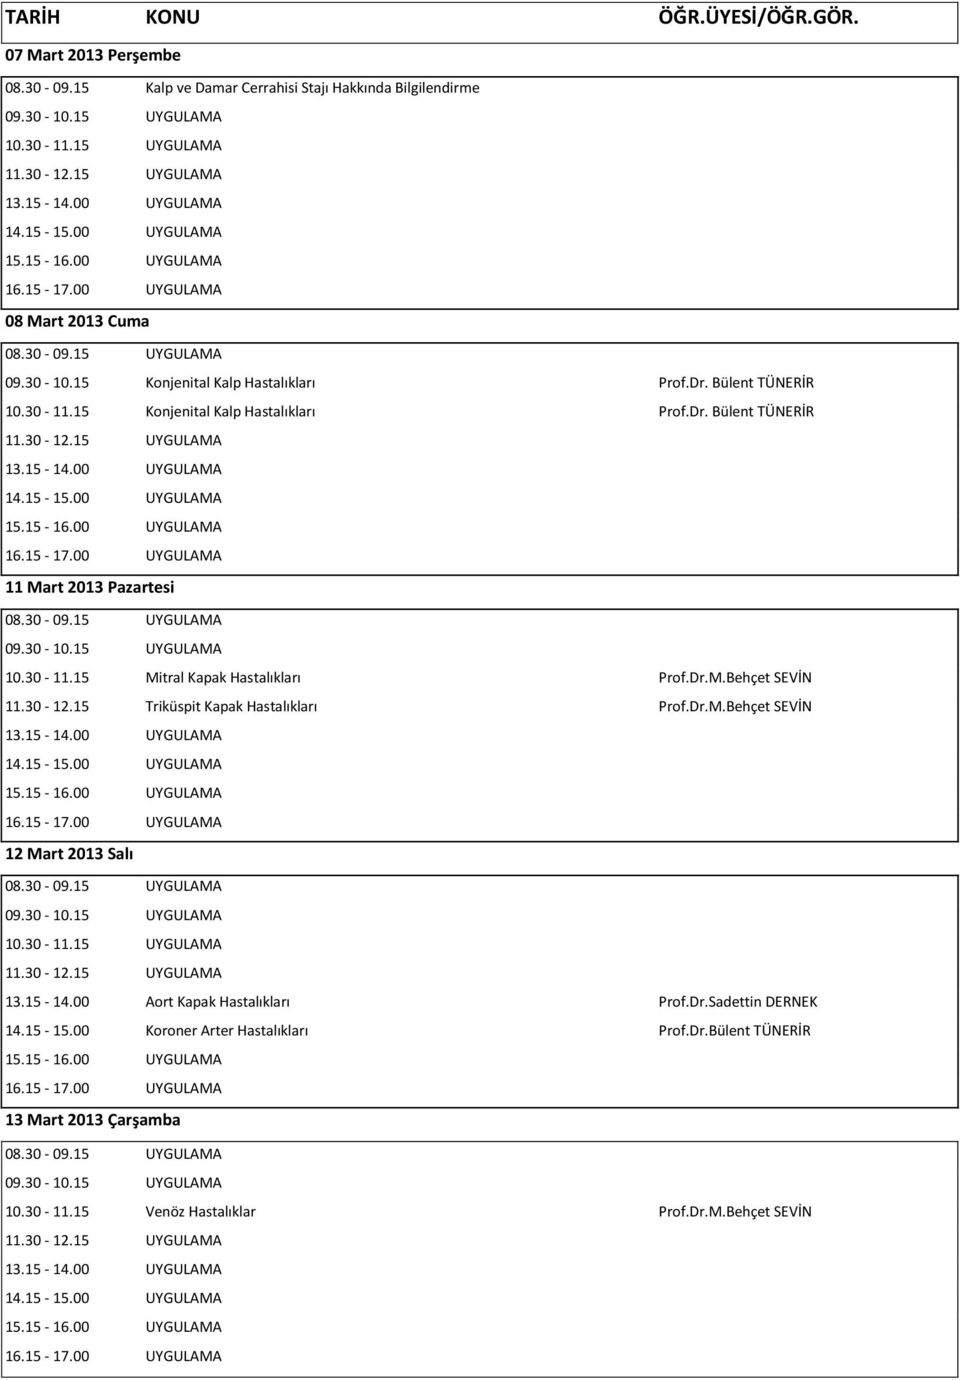 30-11.15 Mitral Kapak Hastalıkları Prof.Dr.M.Behçet SEVİN 11.30-12.15 Triküspit Kapak Hastalıkları Prof.Dr.M.Behçet SEVİN 12 Mart 2013 Salı 13.15-14.